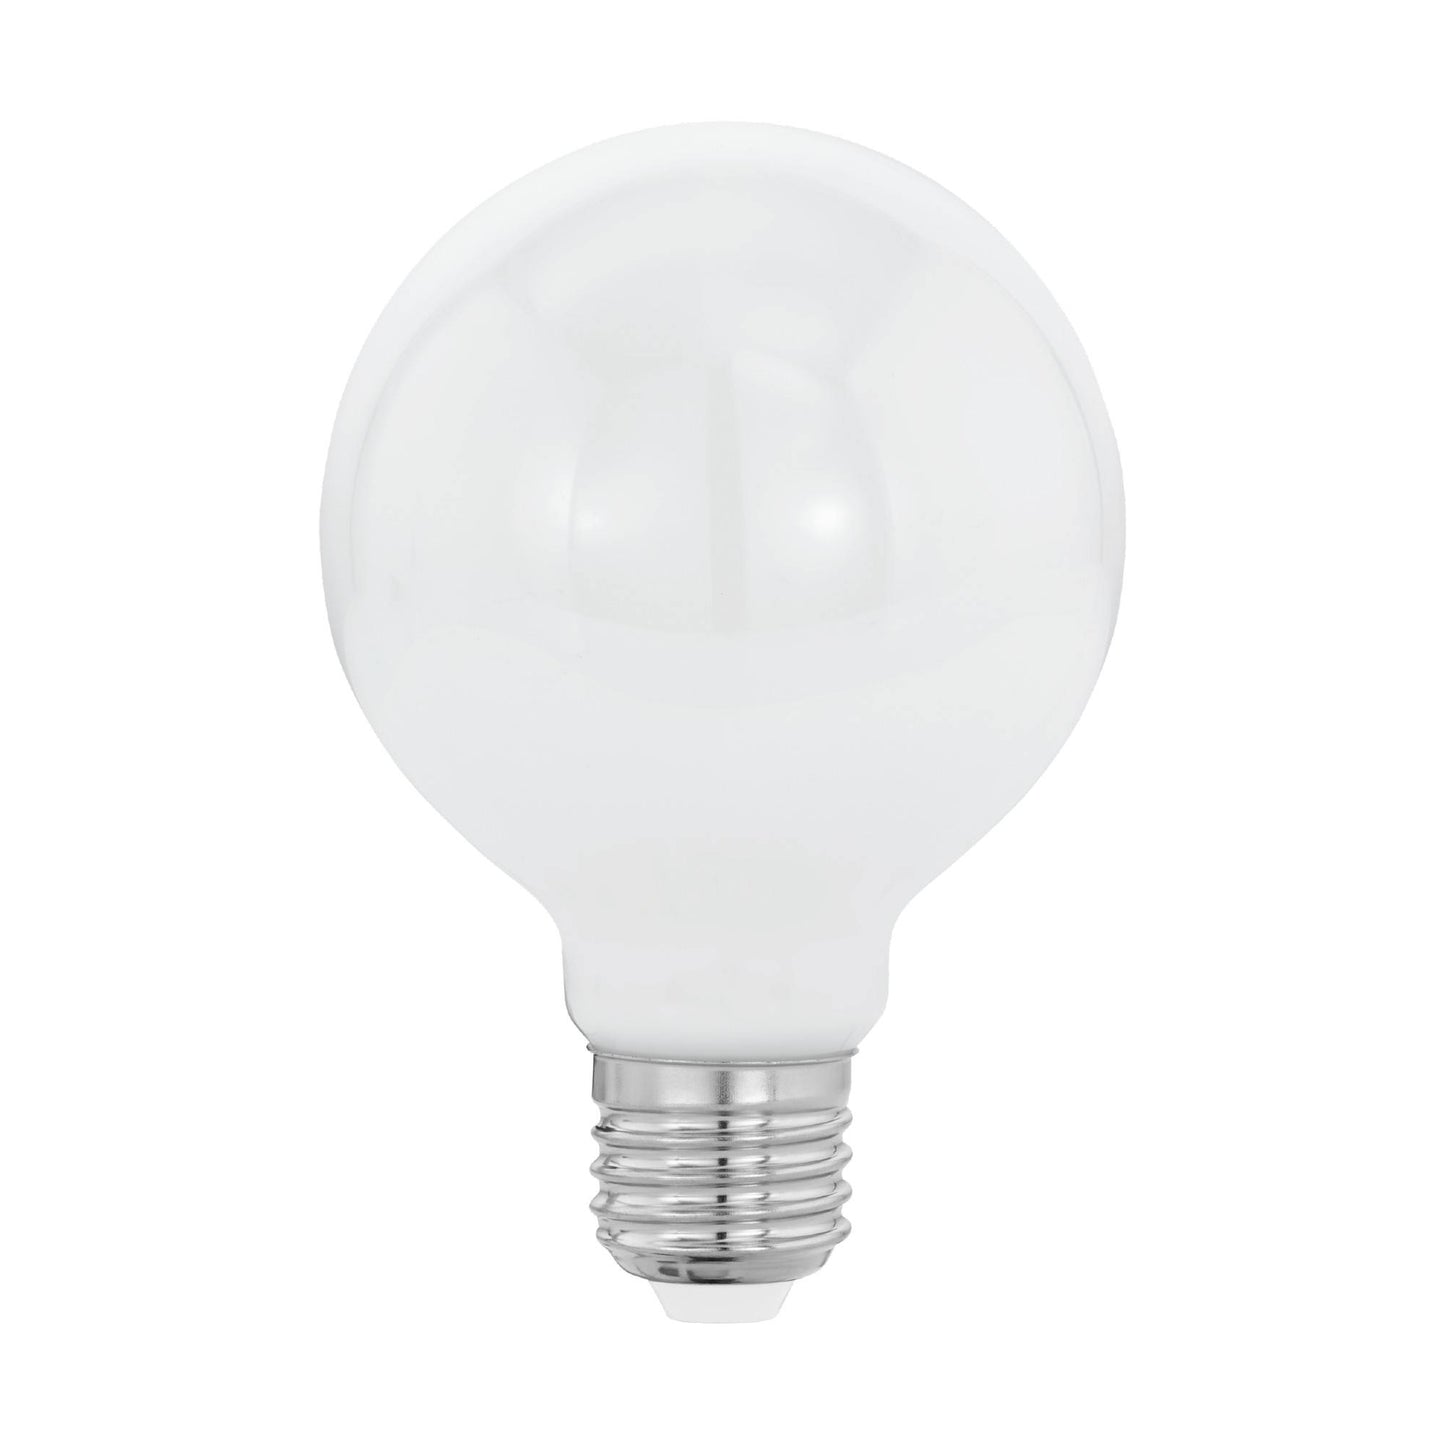 E27/ES 7w LED Decor Coated Large Globe Warm White Light Bulb